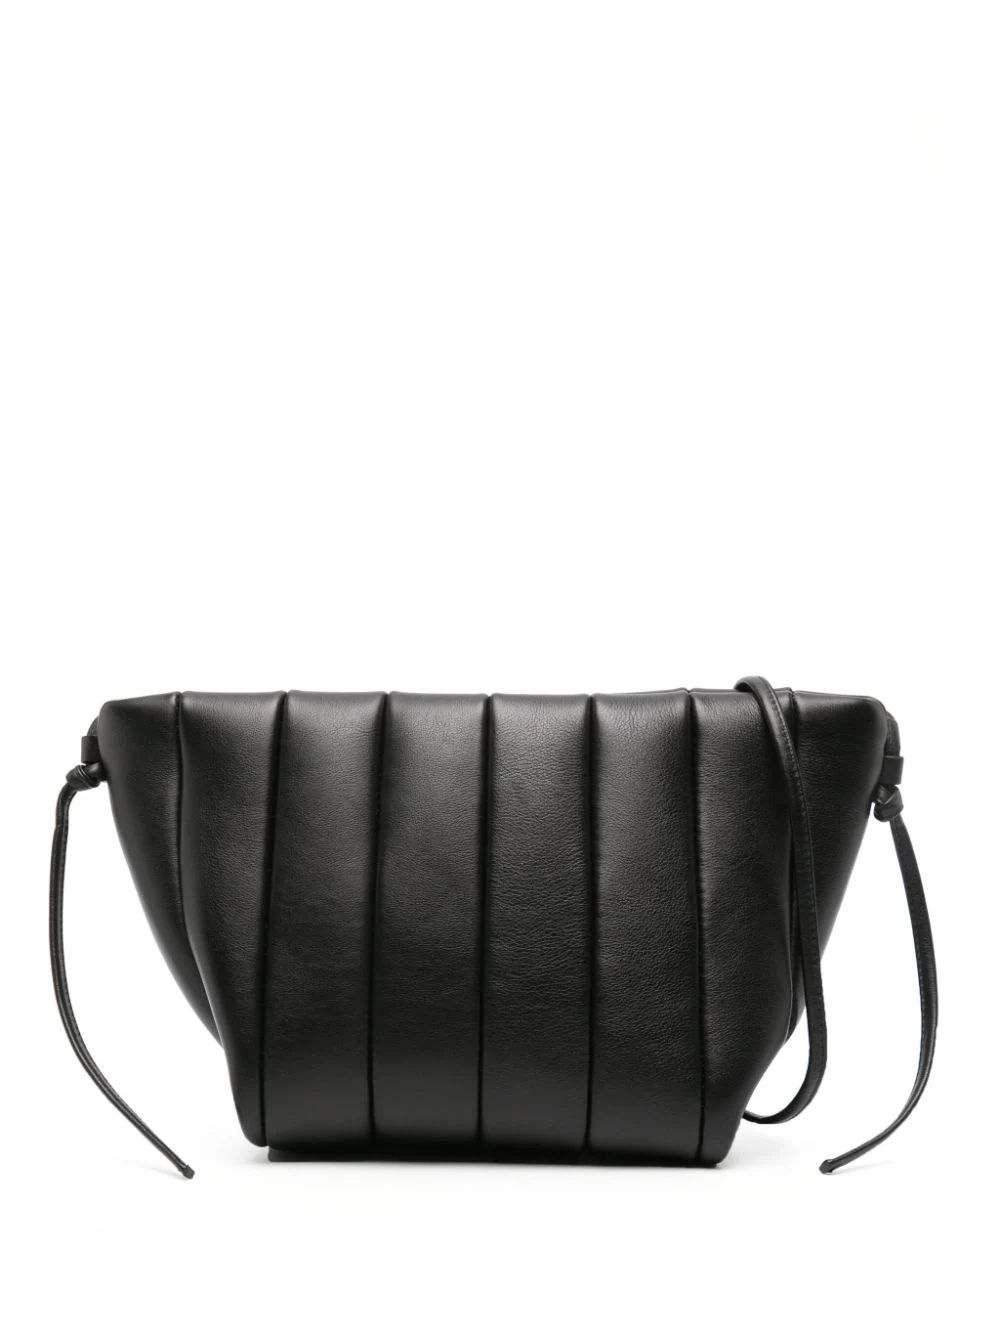 Maeden Boulevard Padded Leather Shoulder Bag - Farfetch | Farfetch Global